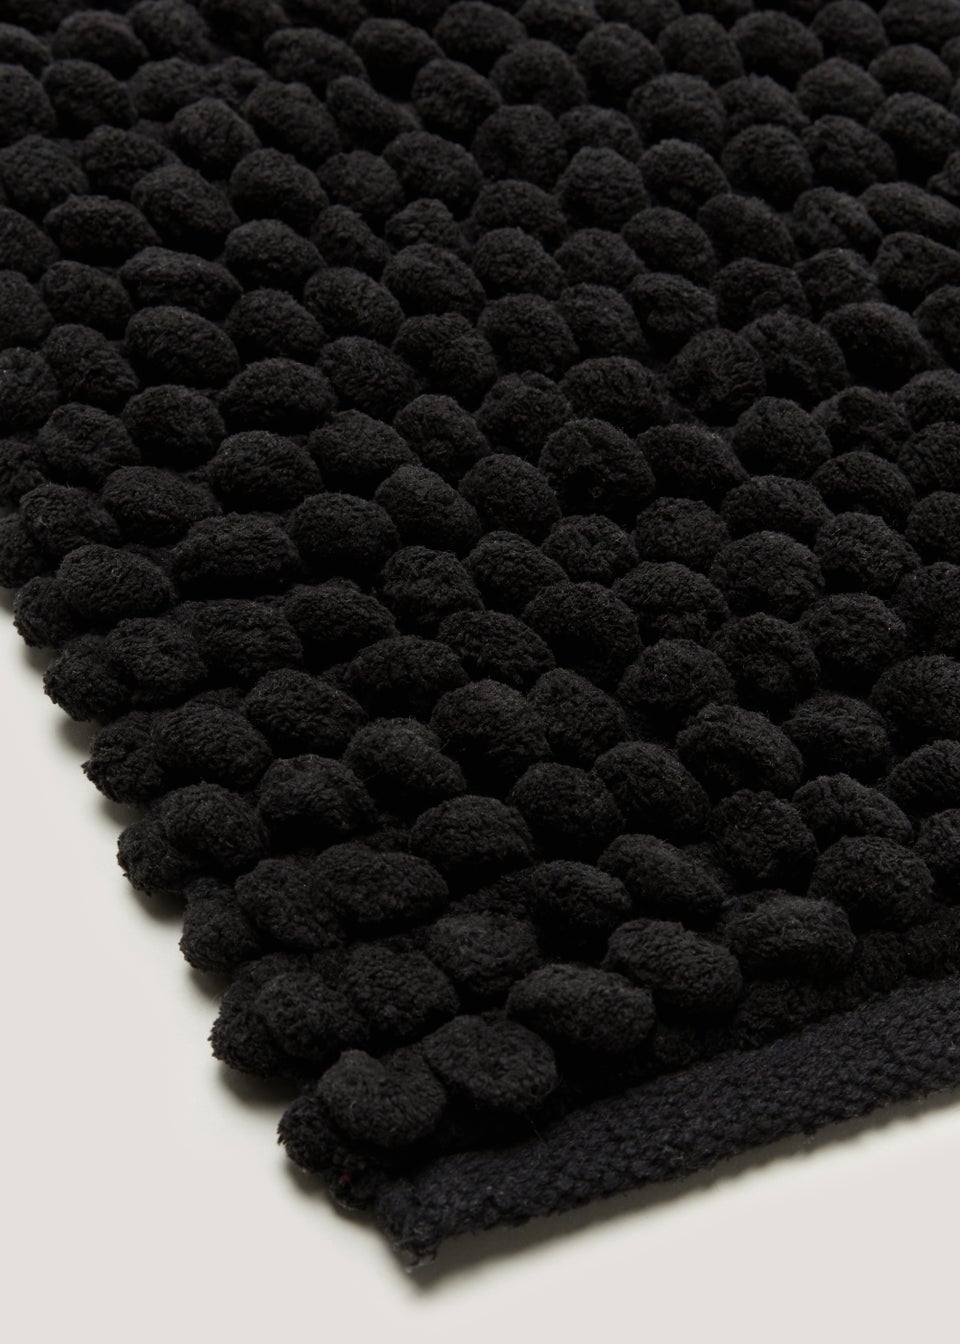 Black Chunky Bobble Shower Mat (50cm x 50cm)